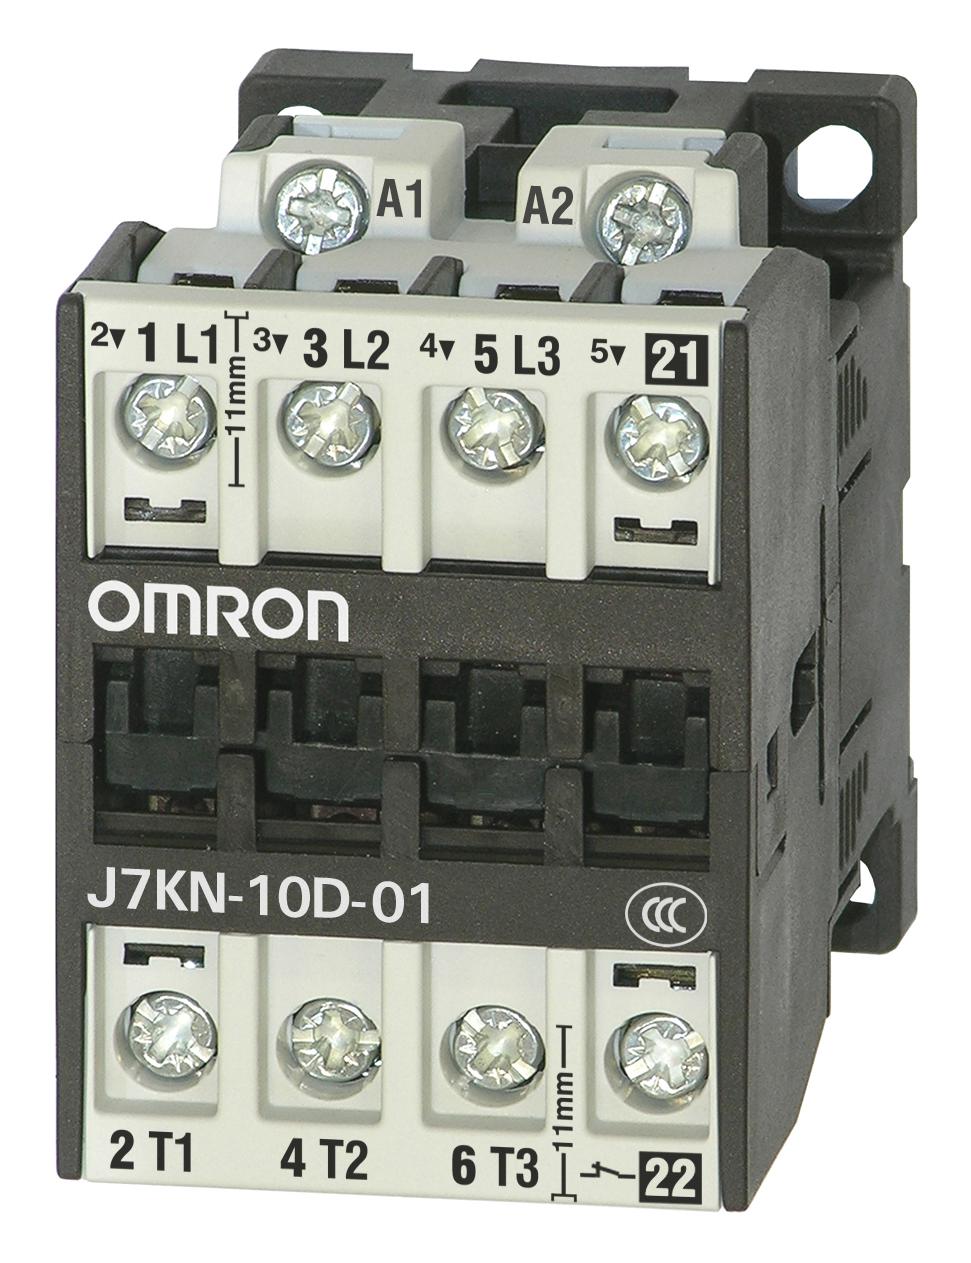 J7KN-10D-01 24 CONTACTORS RELAYS OMRON